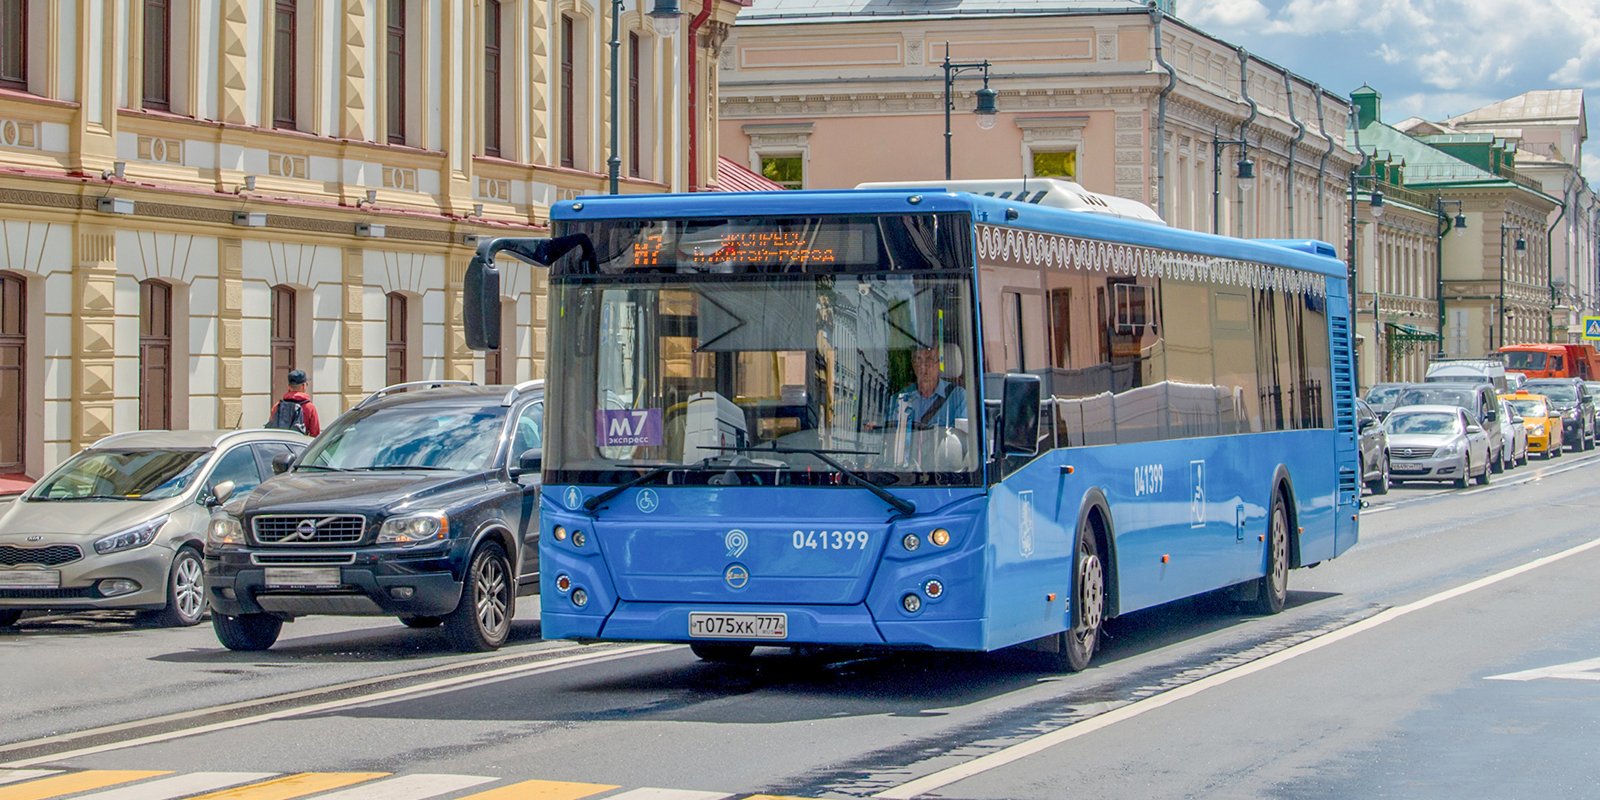 Автобус из Харькова в Ялту, подробности рейса и преимущества